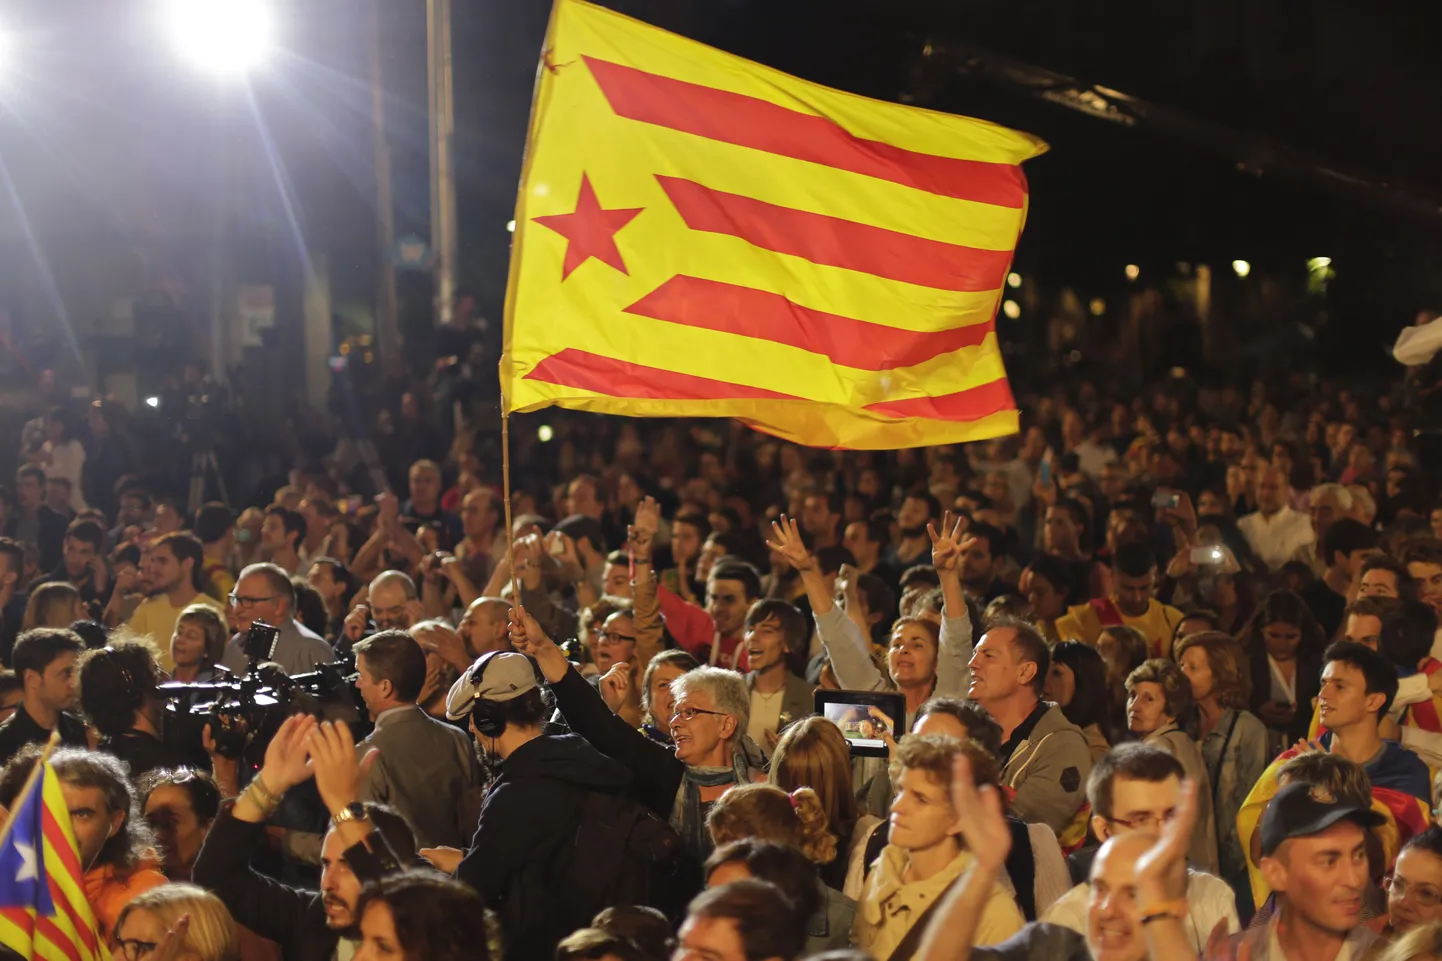 Kataloonlased septembrikuus valimistulemusi tähistamas.